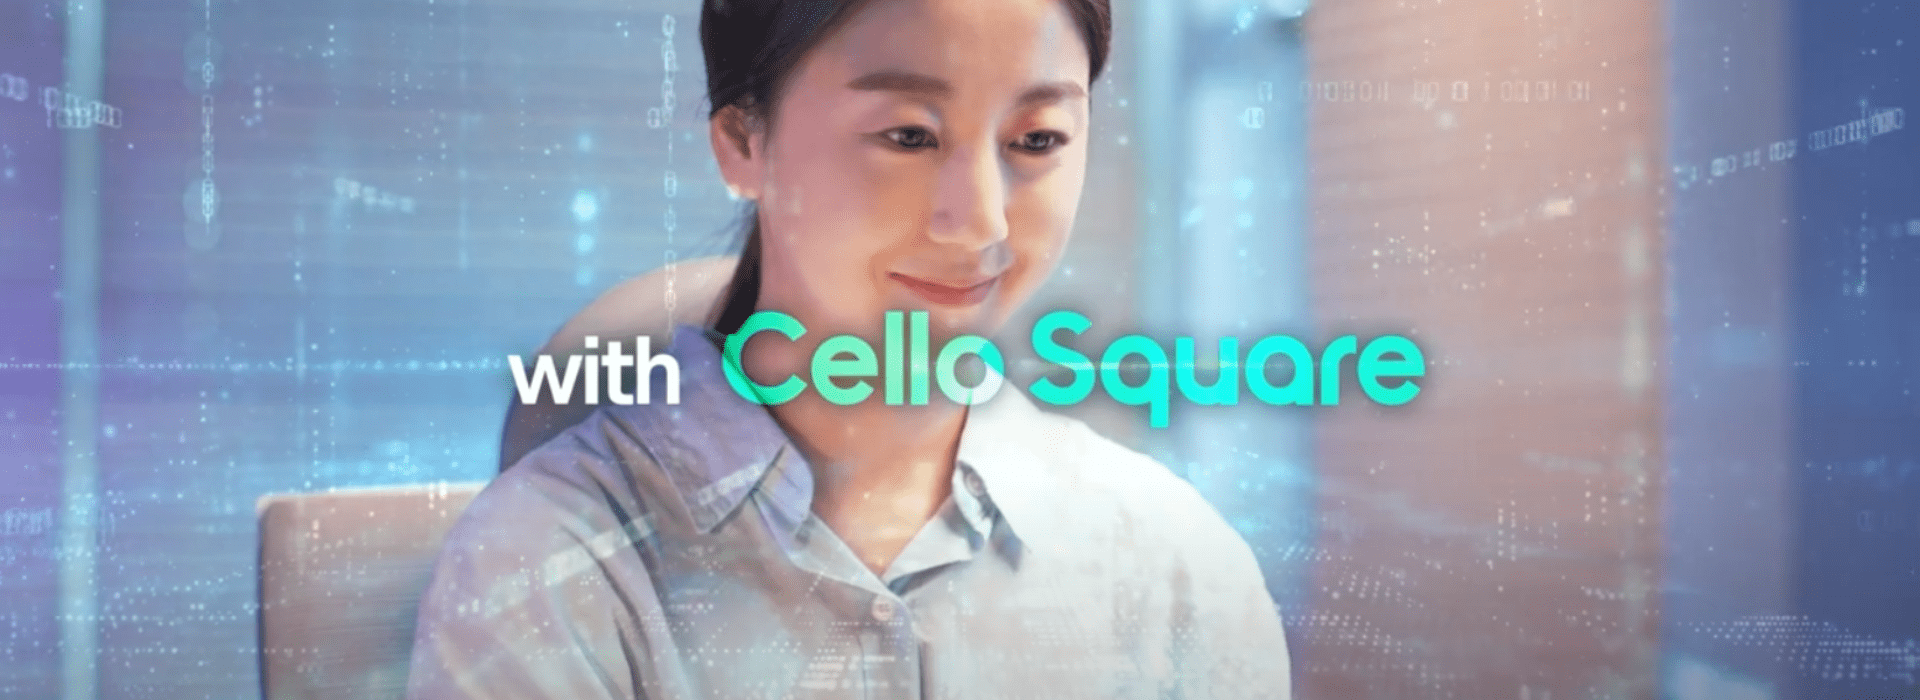 Cello Square Demo for Express